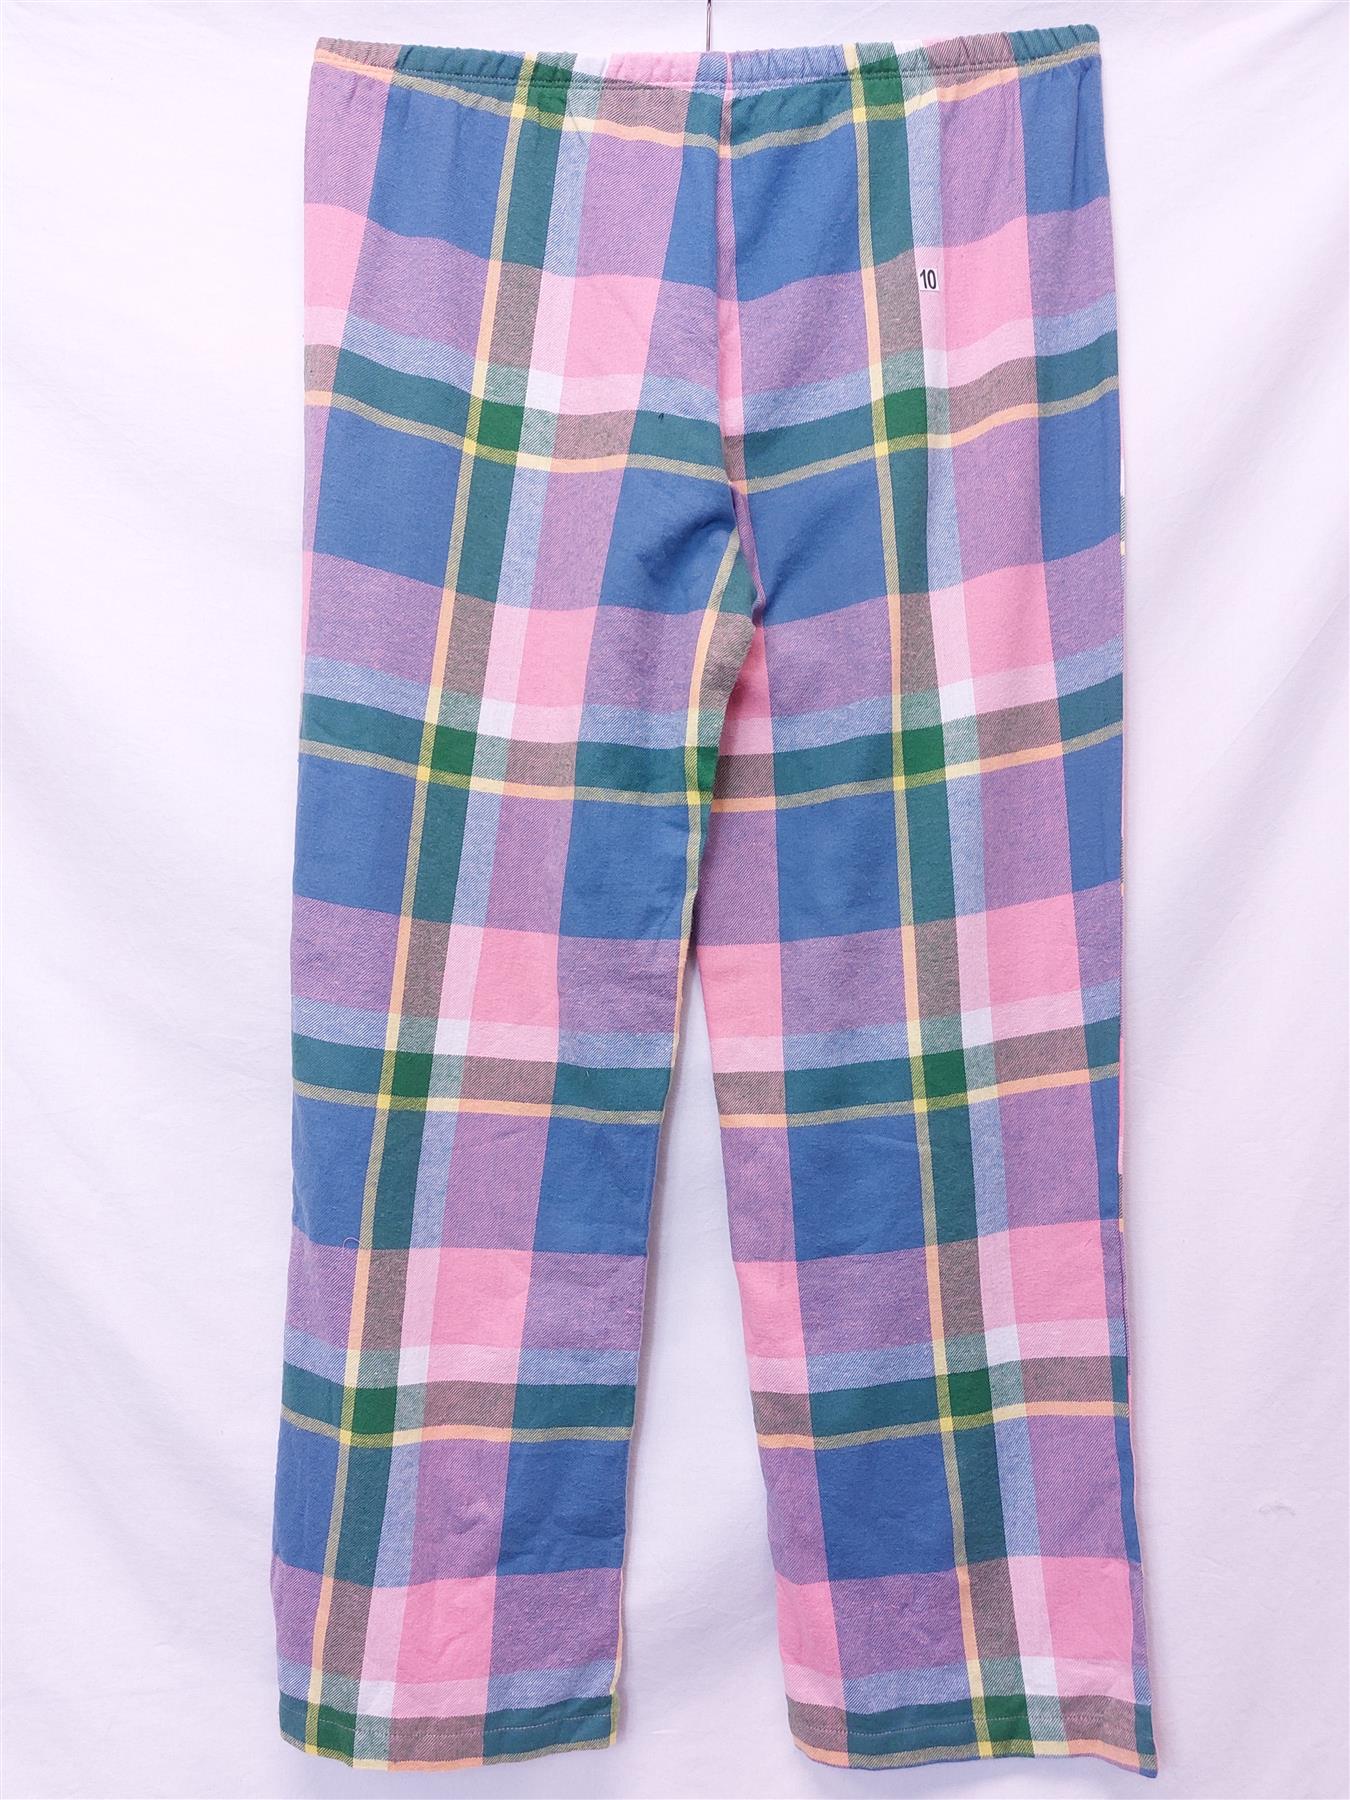 Women's Tu Pyjama Bottoms Pure Cotton Multicolour Check Soft Warm Comfy PJ Pants